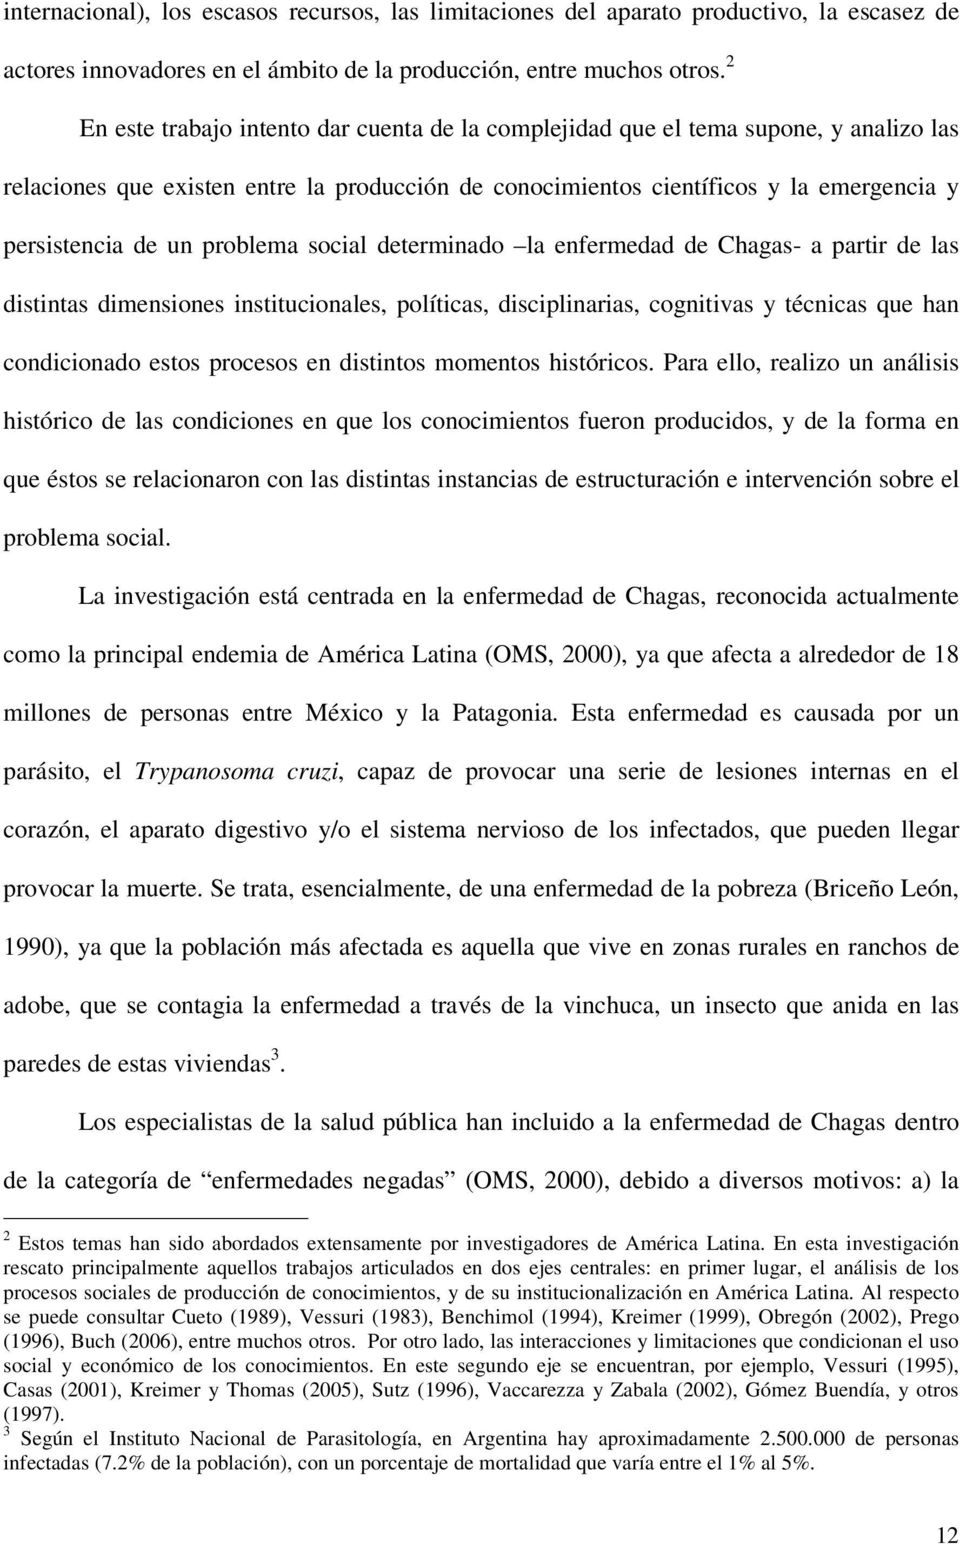 problema social determinado la enfermedad de Chagas- a partir de las distintas dimensiones institucionales, políticas, disciplinarias, cognitivas y técnicas que han condicionado estos procesos en